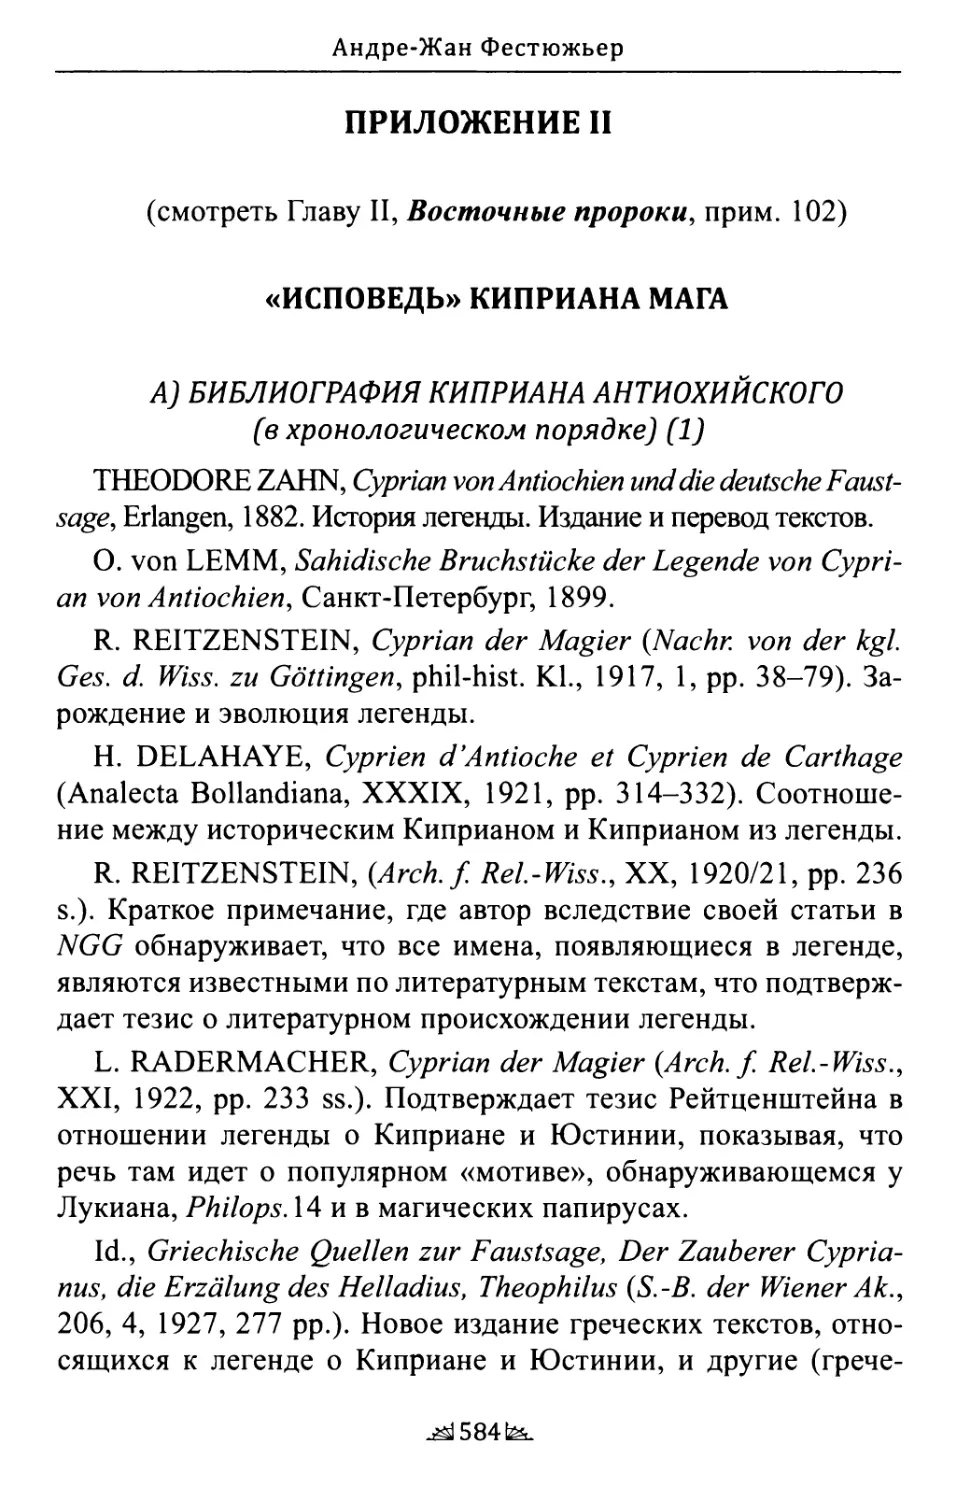 «Исповедь» Киприана Мага
Библиография Киприана Антиохийского